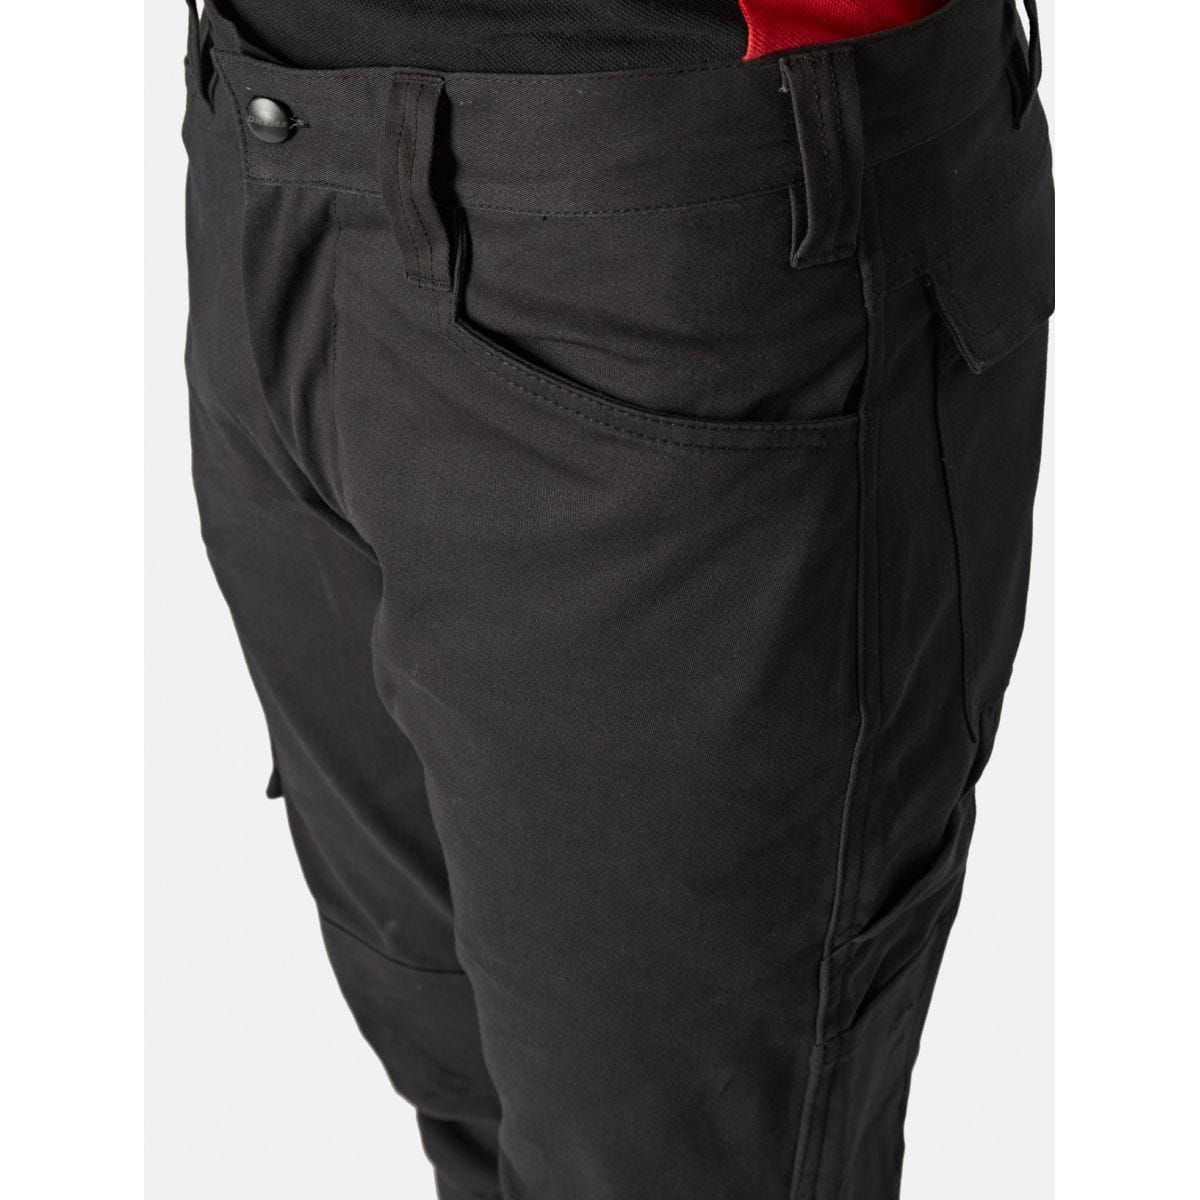 Pantalon Lead In Flex Noir - Dickies - Taille 38 3